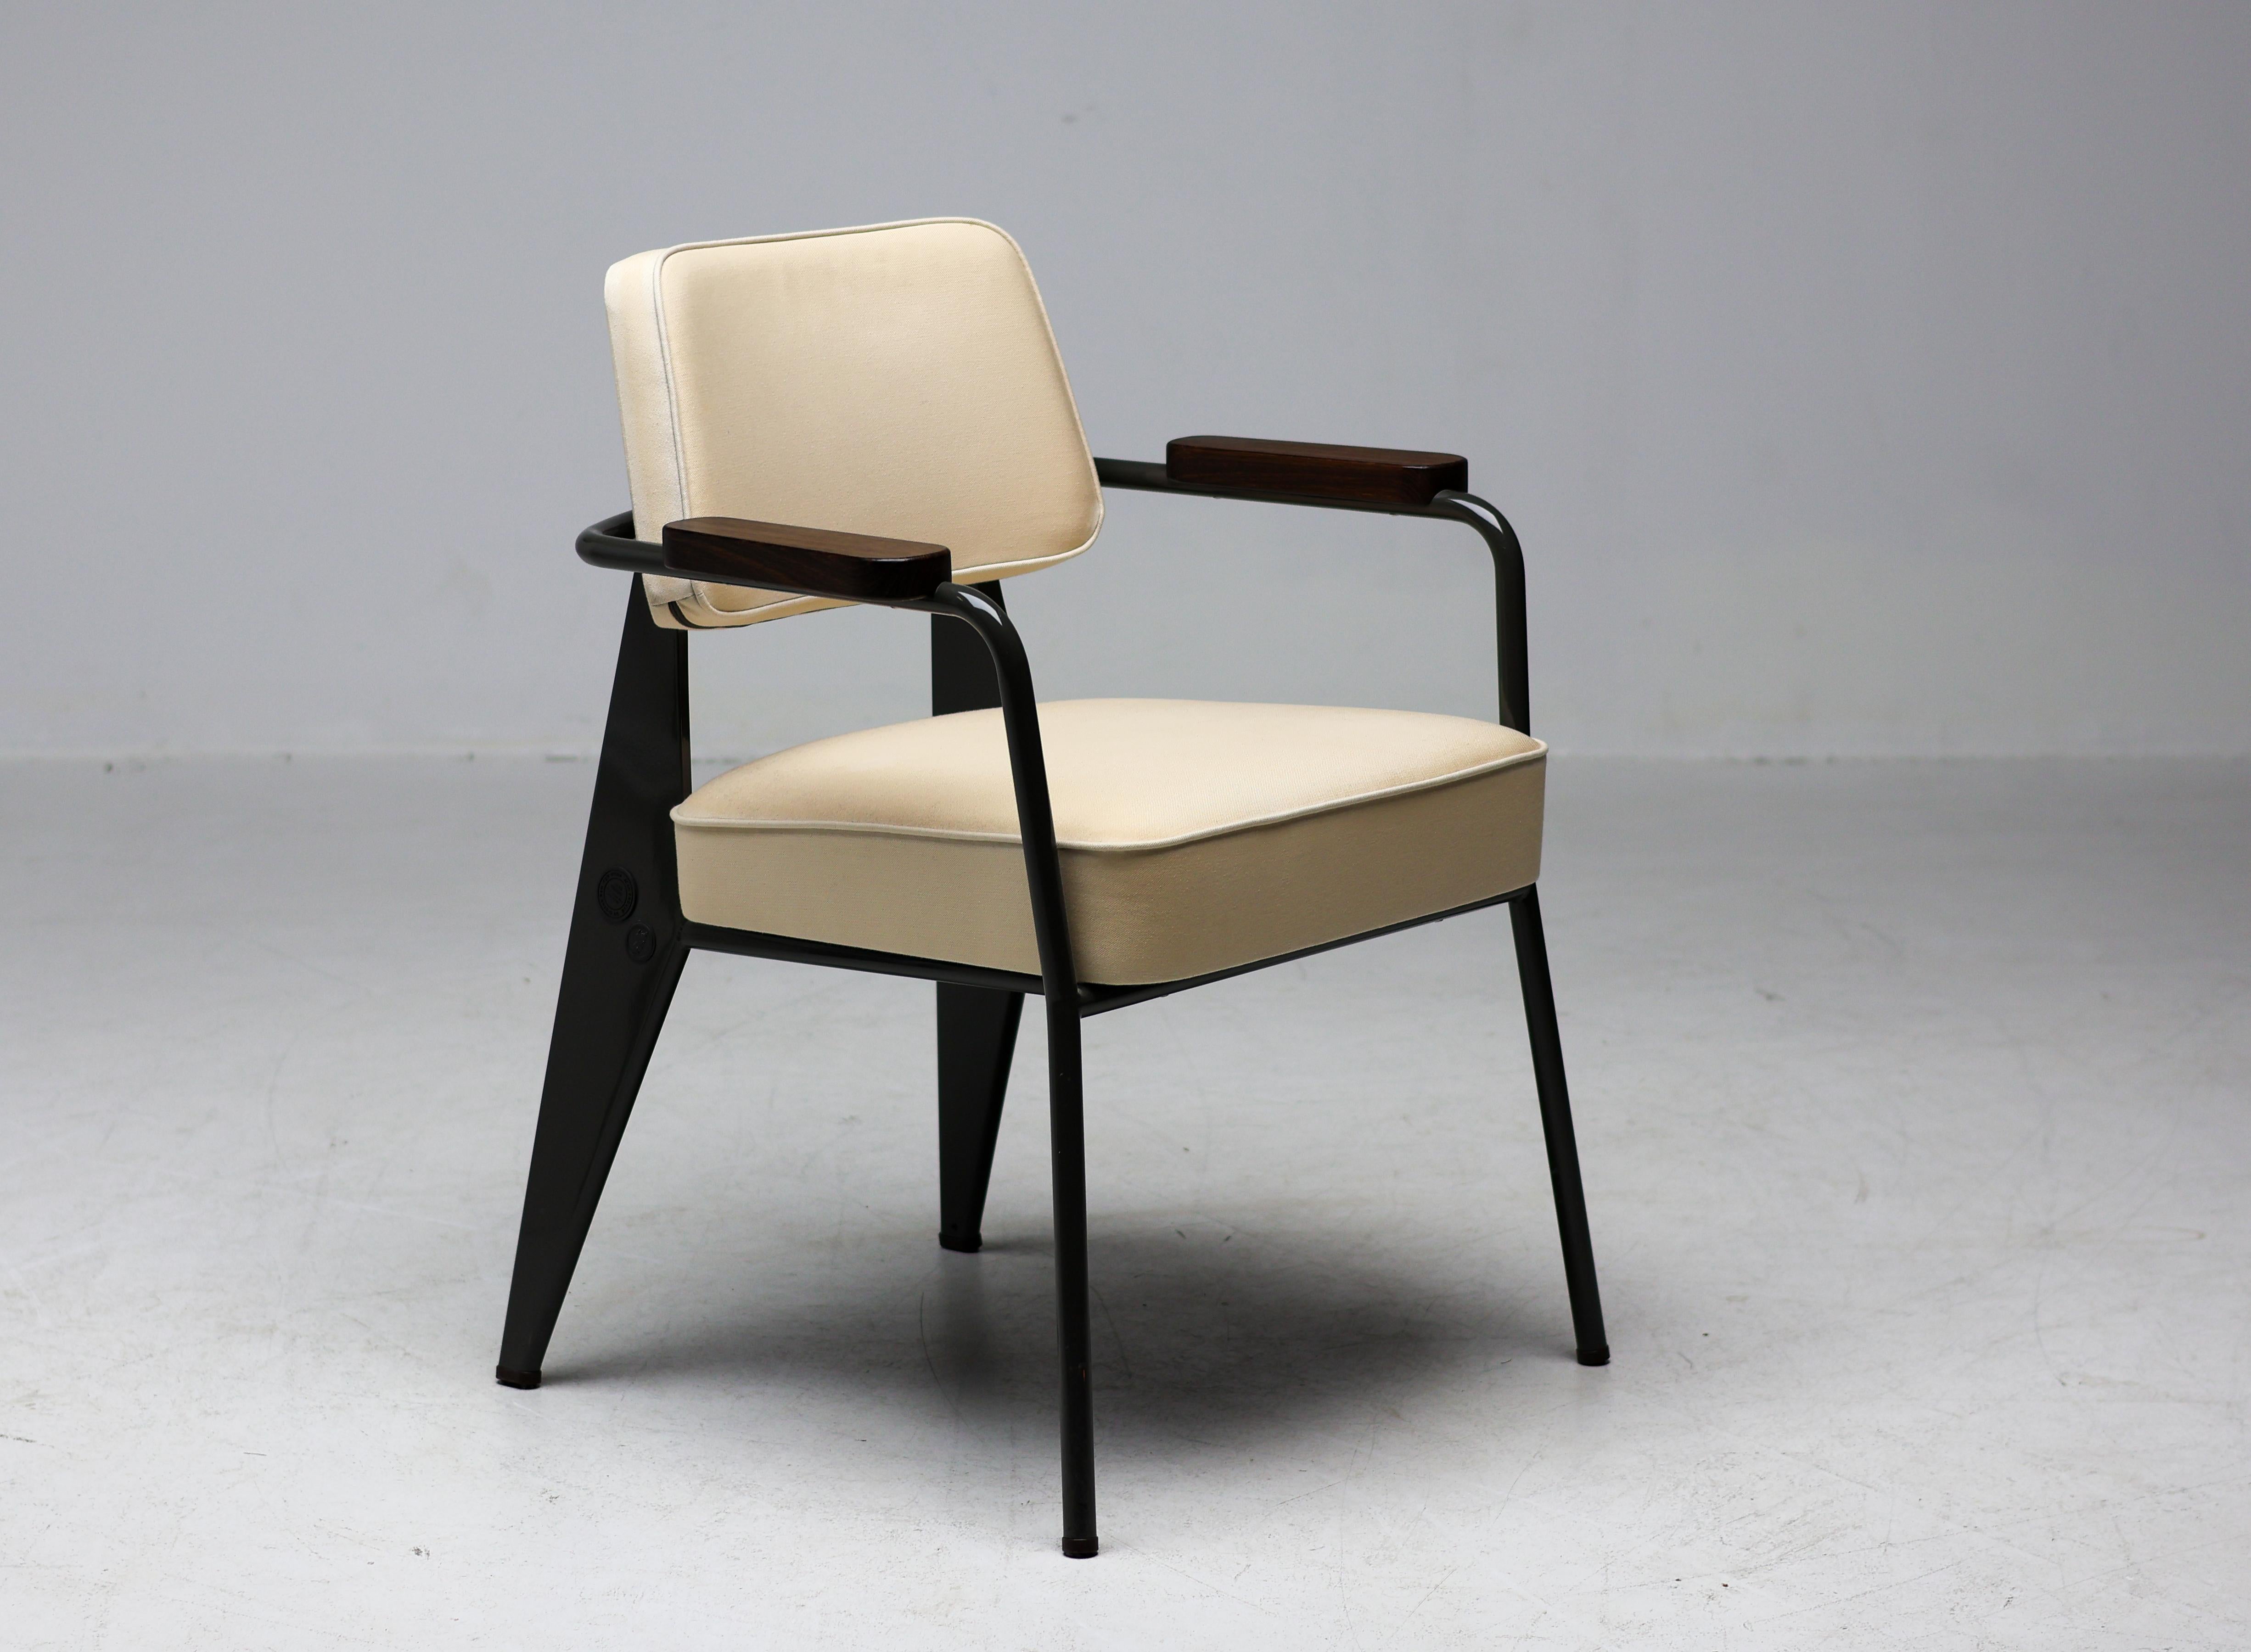 Fauteuil Directional en édition limitée conçu par Jean Prouvé et fabriqué en 2011 par Vitra en collaboration avec G-Star.  Cette magnifique chaise est issue de la rare première édition limitée, avec le faible numéro de production 167.
Labellisé avec